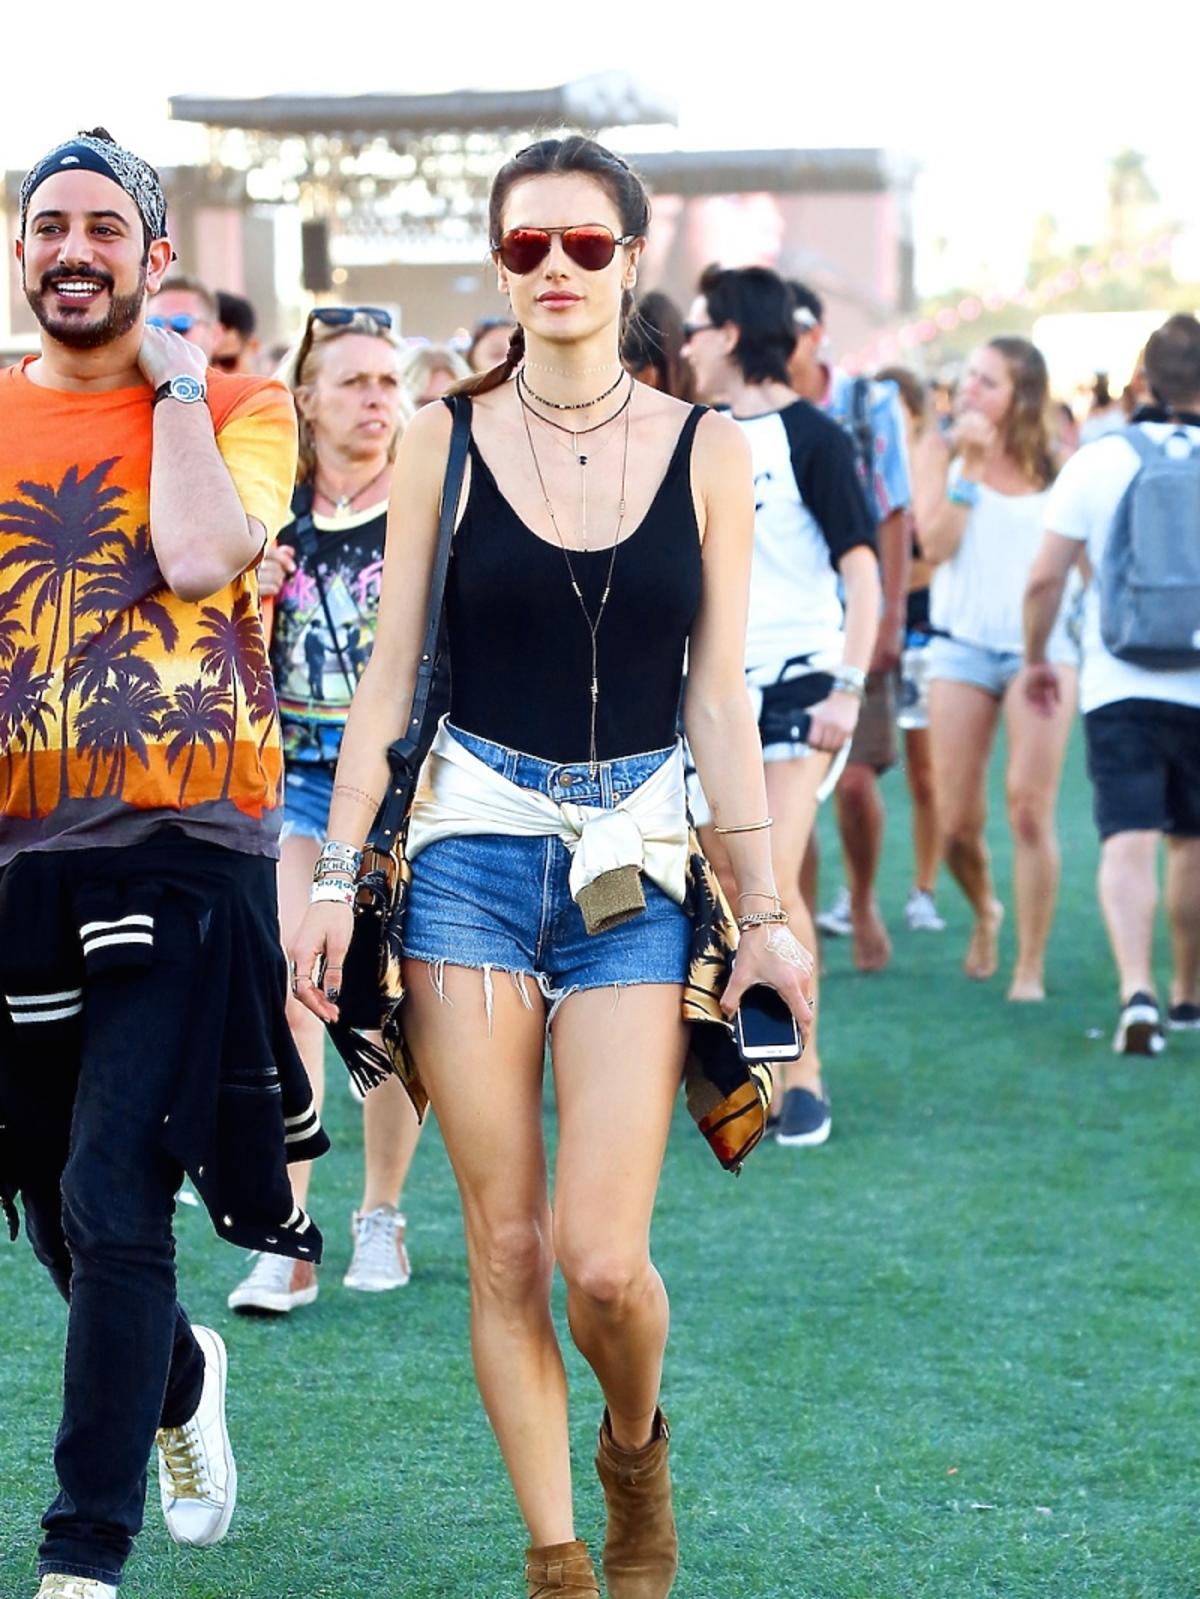 Modna stylizacja Alessandry Ambrosio z dżinsowymi szortami i czarnym topem na festiwalu Coachella 2016